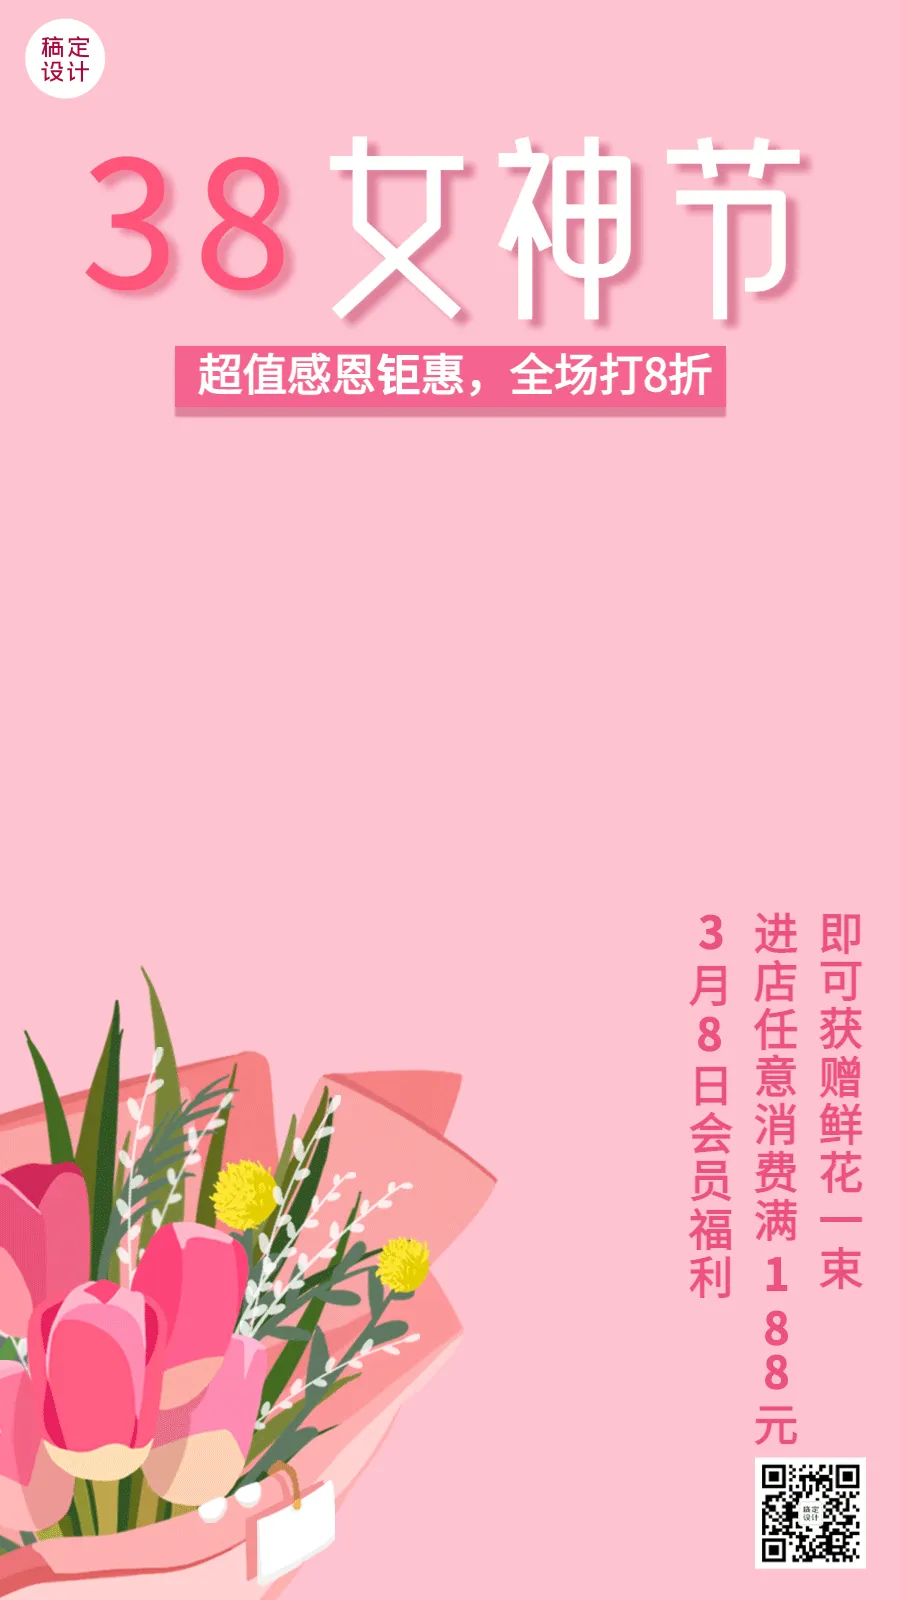 妇女节节日营销动态手机海报